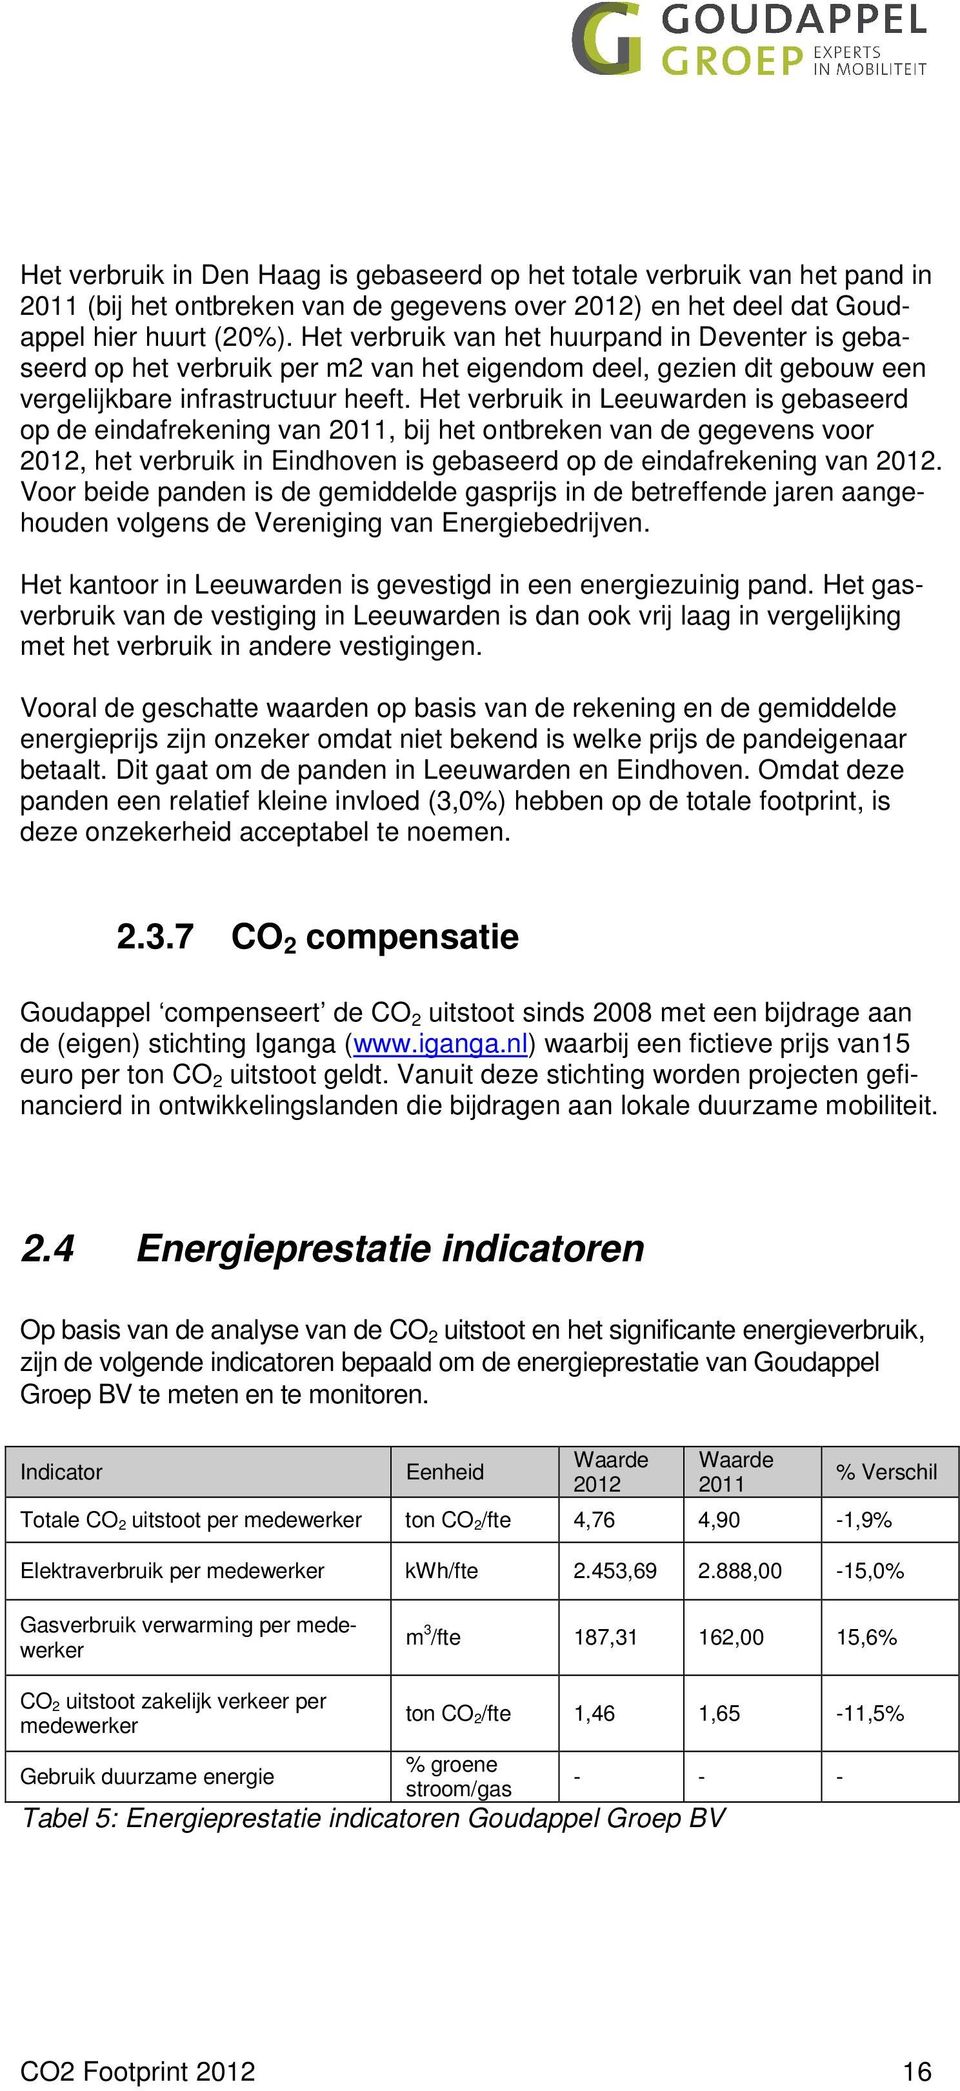 Het verbruik in Leeuwarden is gebaseerd op de eindafrekening van 2011, bij het ontbreken van de gegevens voor 2012, het verbruik in Eindhoven is gebaseerd op de eindafrekening van 2012.